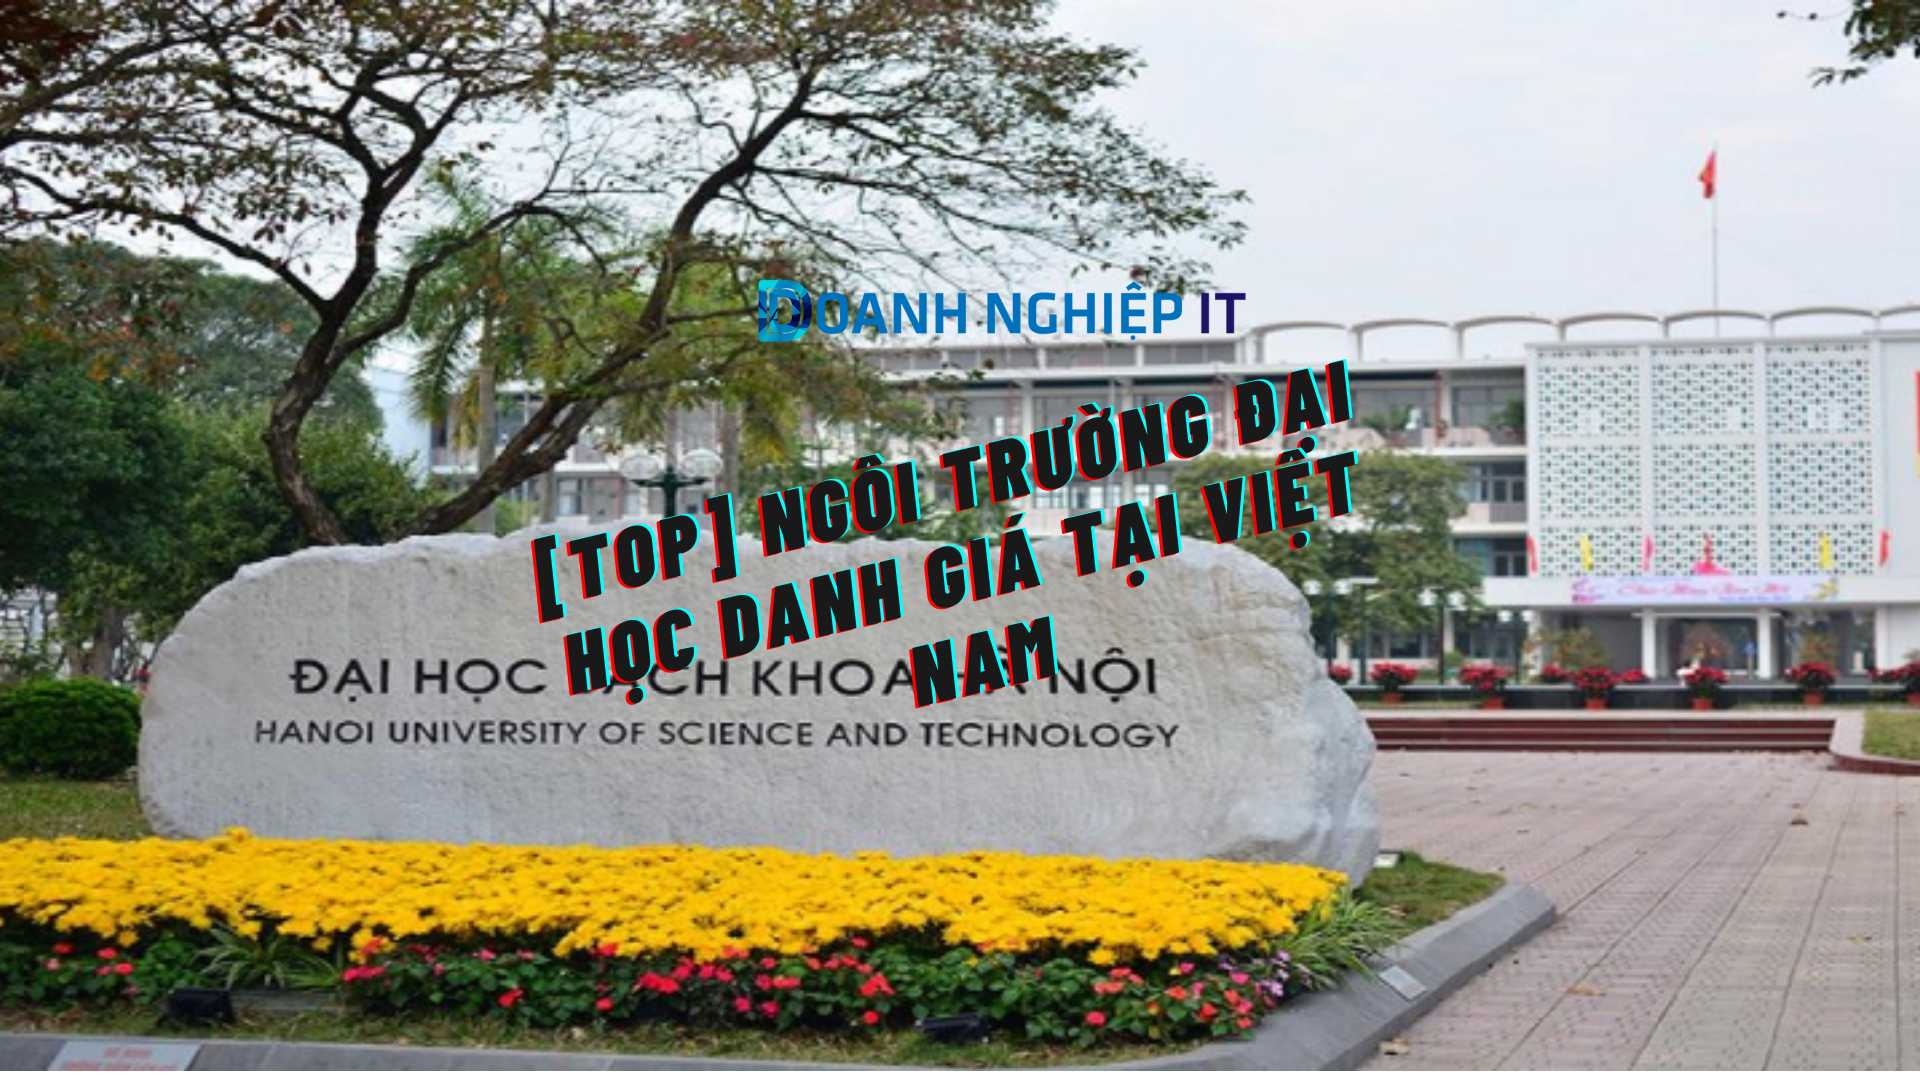 [Top] Ngôi trường đại học danh giá tại Việt Nam